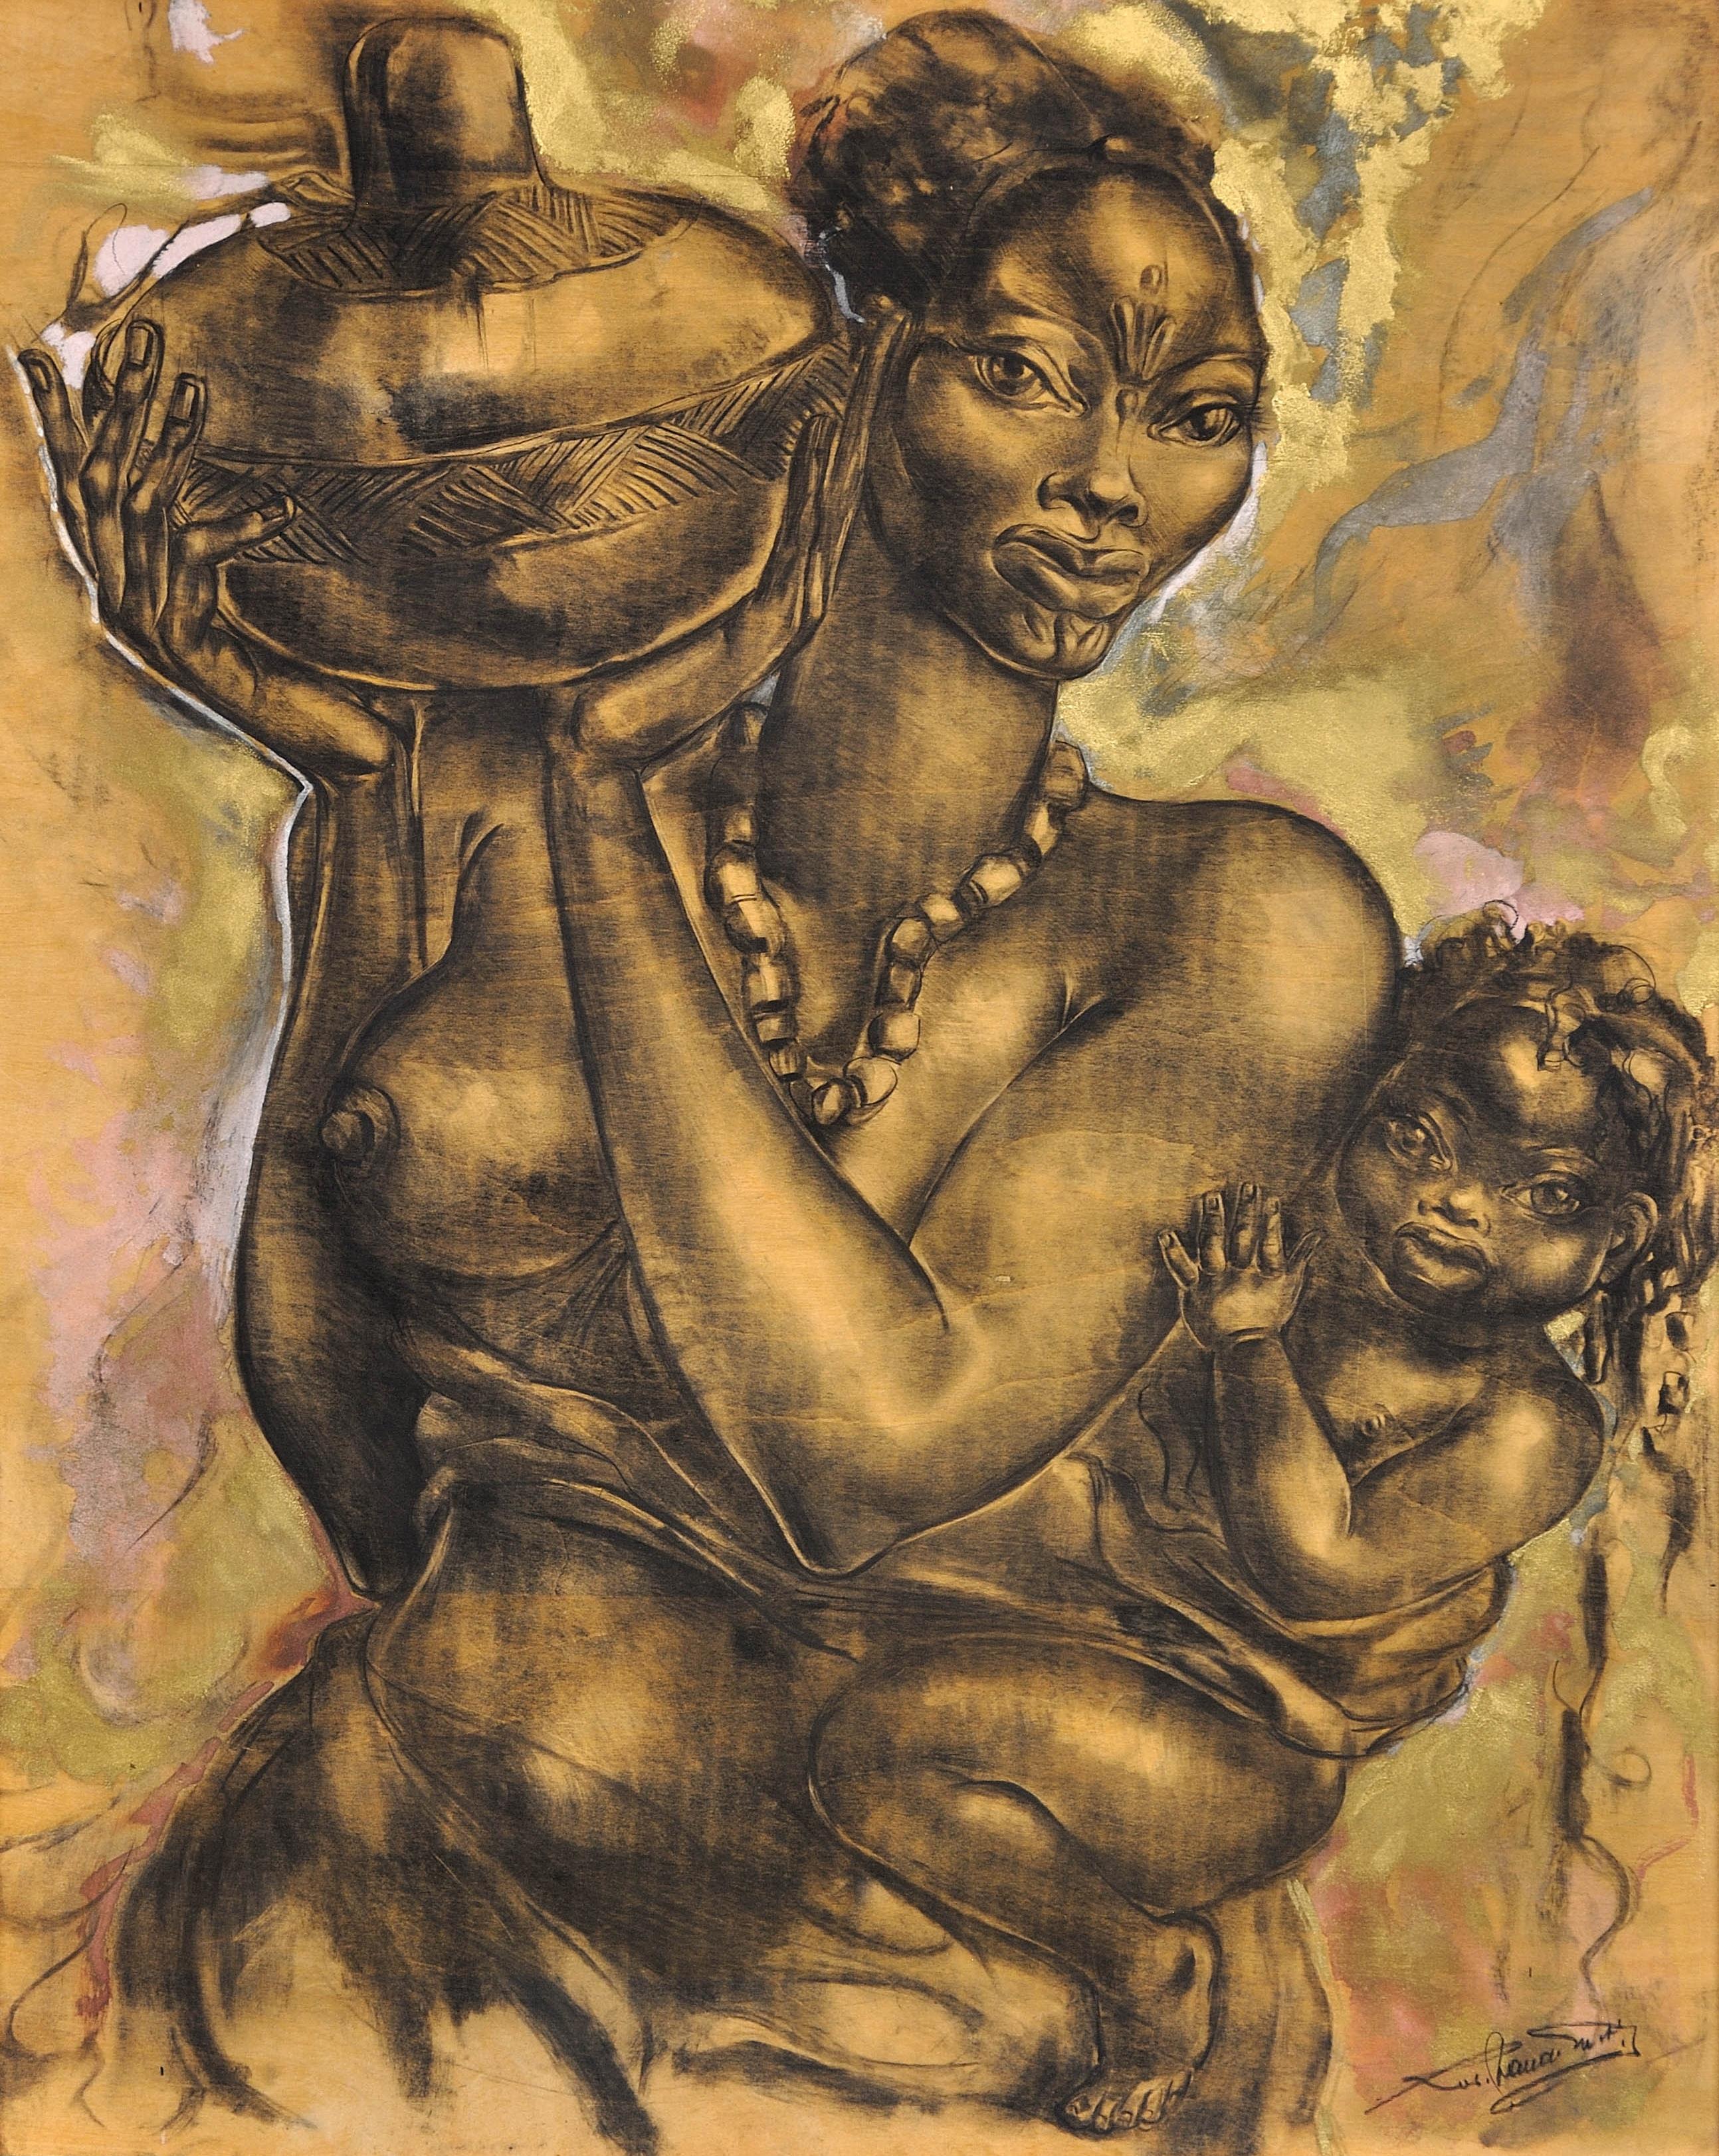 Mutter und Kind. Sehr gewürdigtes modernes, herausragendes Kunstwerk des 20. Jahrhunderts – Painting von Unknown